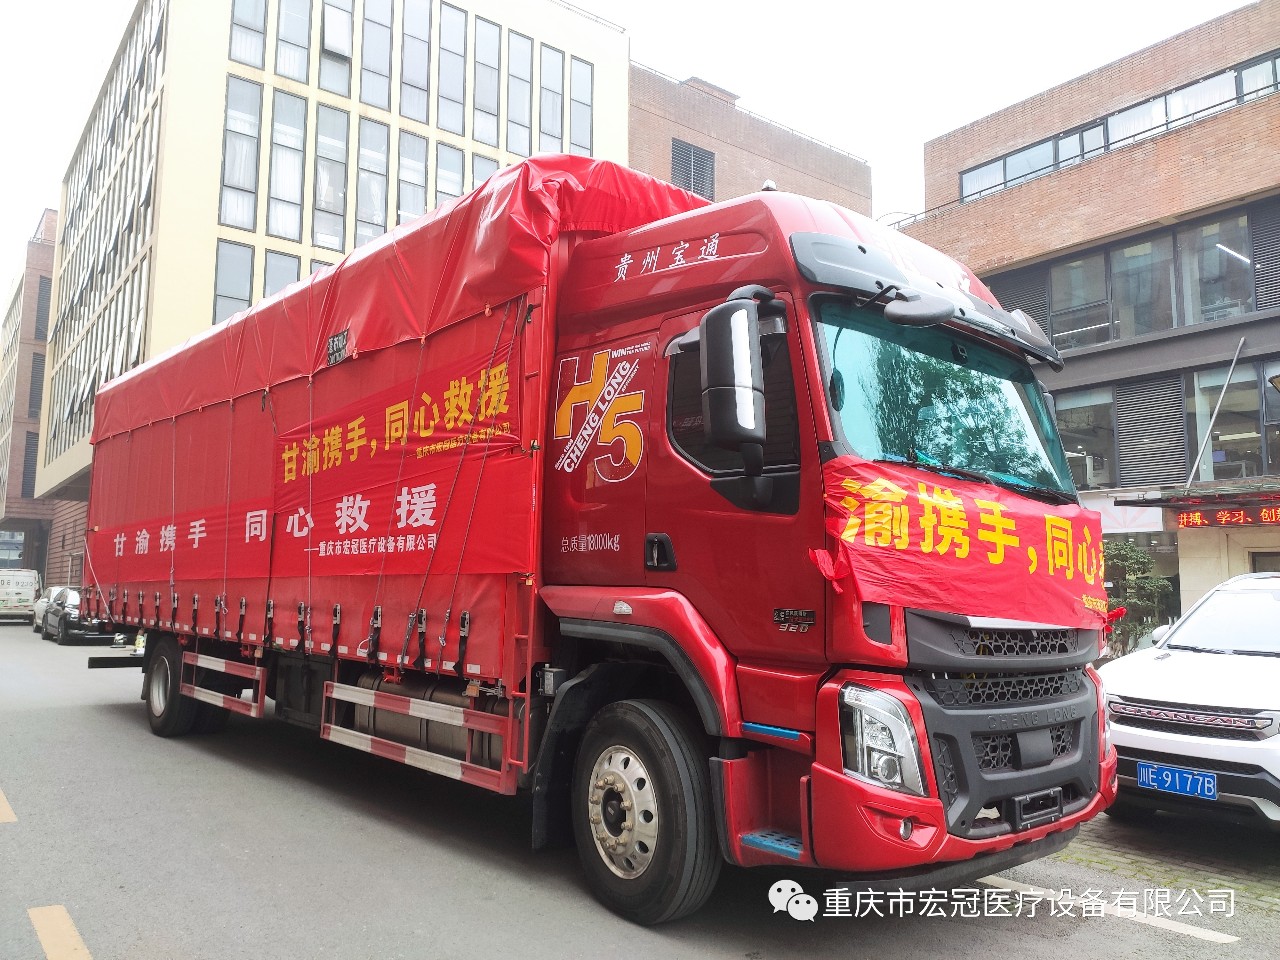 Chongqing Hongguan Medical Equipment Co., Ltd. va donar més de 700.000 iuans de subministraments mèdics per donar suport a les zones de desastre a Gansu.